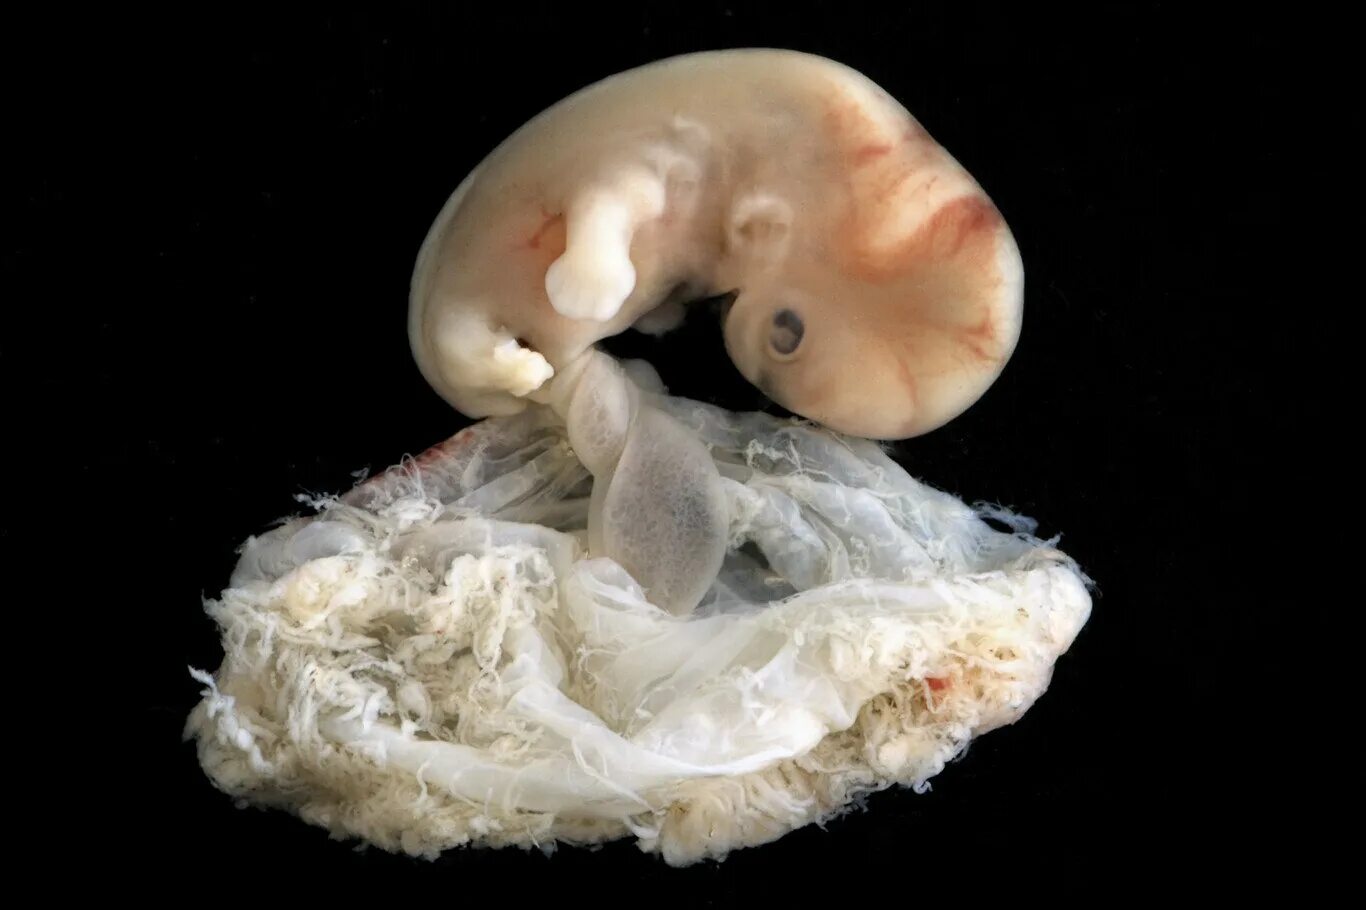 Зародыш 6-7 недель беременности. Человеческий эмбрион 7 недель.